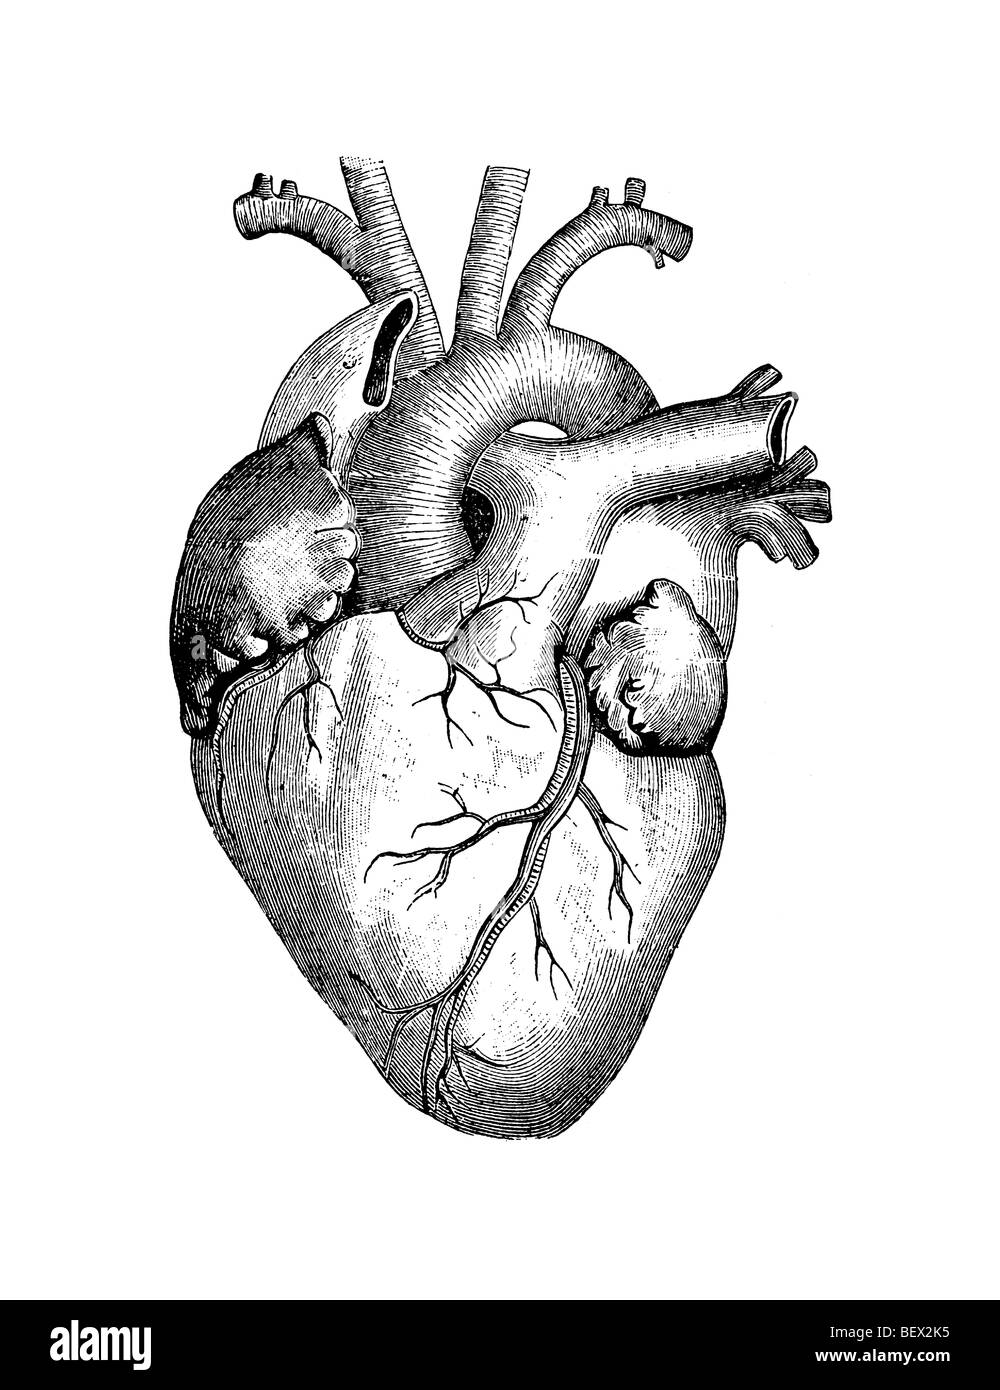 Una ilustración del corazón